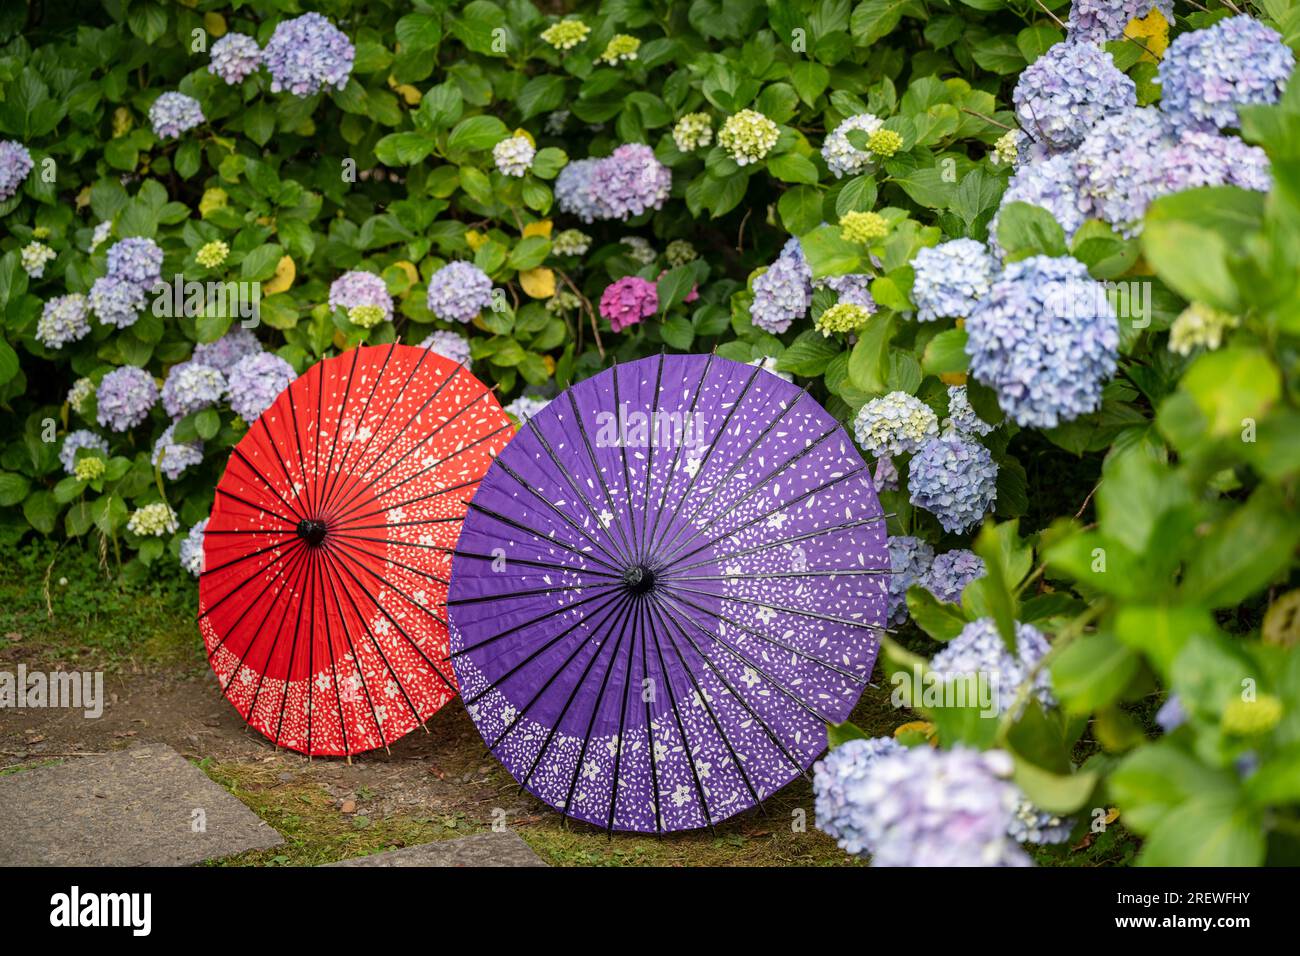 Japanischer traditioneller Ölpapierschirm und blühende Sträucher und Büsche im Garten von Hydrangea macrophylla. Konzept der japanischen Kultur. Kyoto, Japan Stockfoto